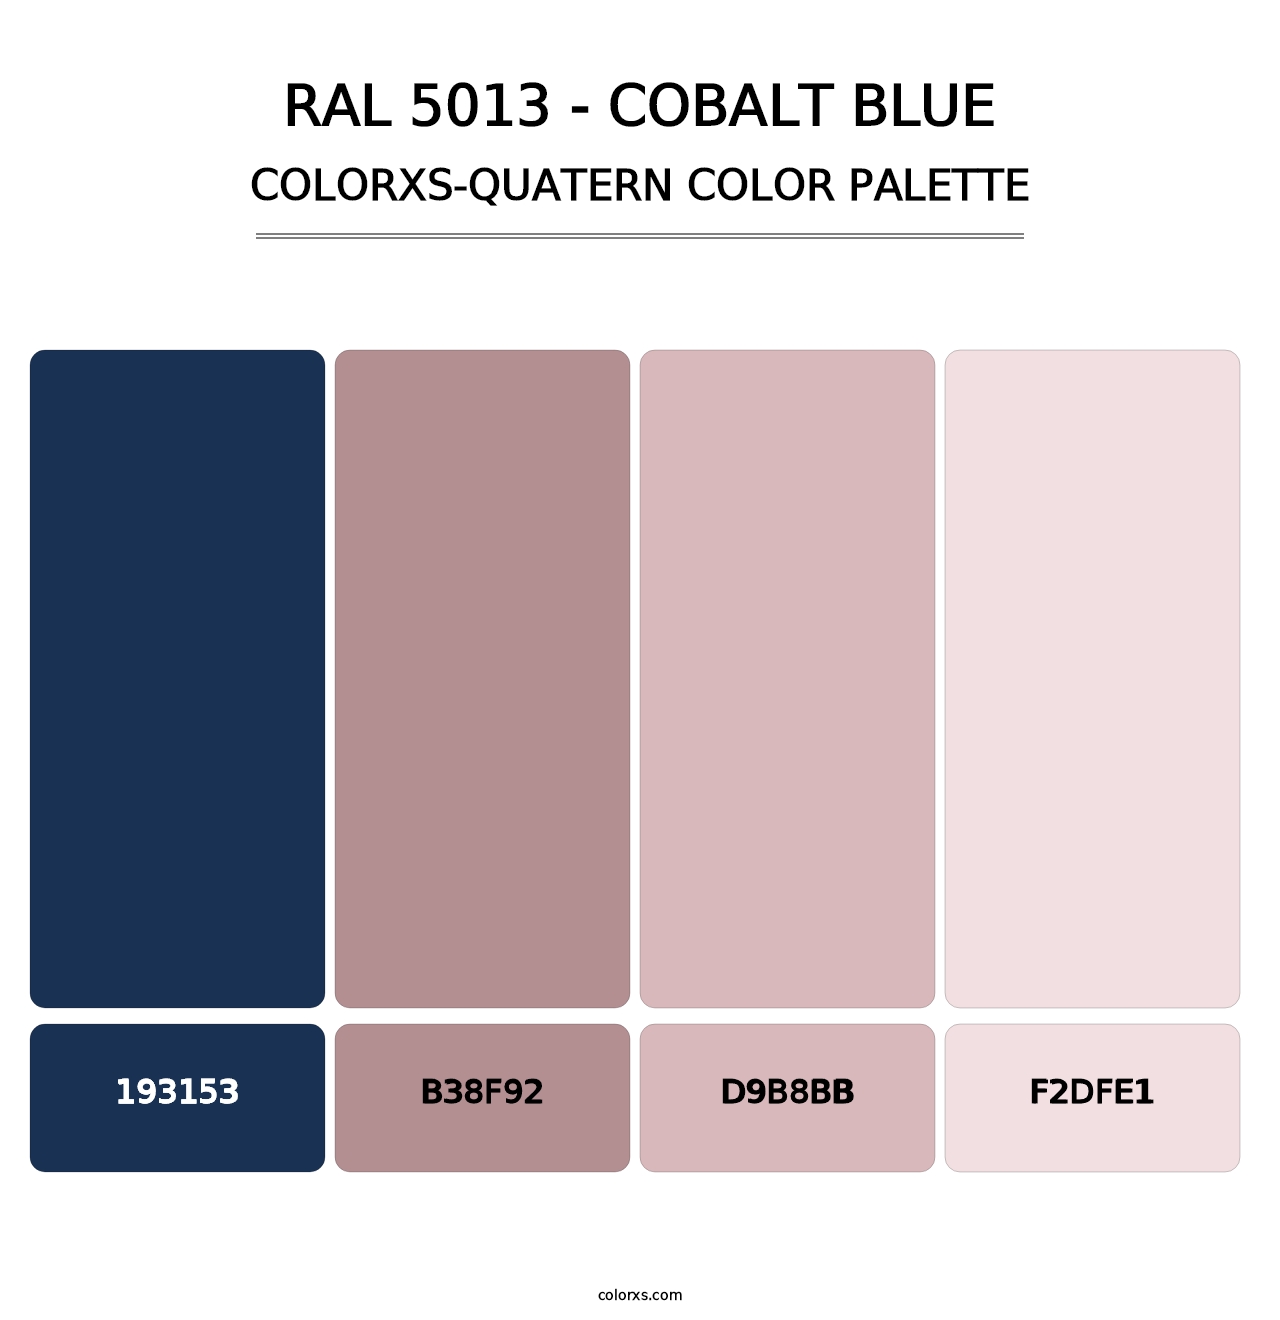 RAL 5013 - Cobalt Blue - Colorxs Quatern Palette